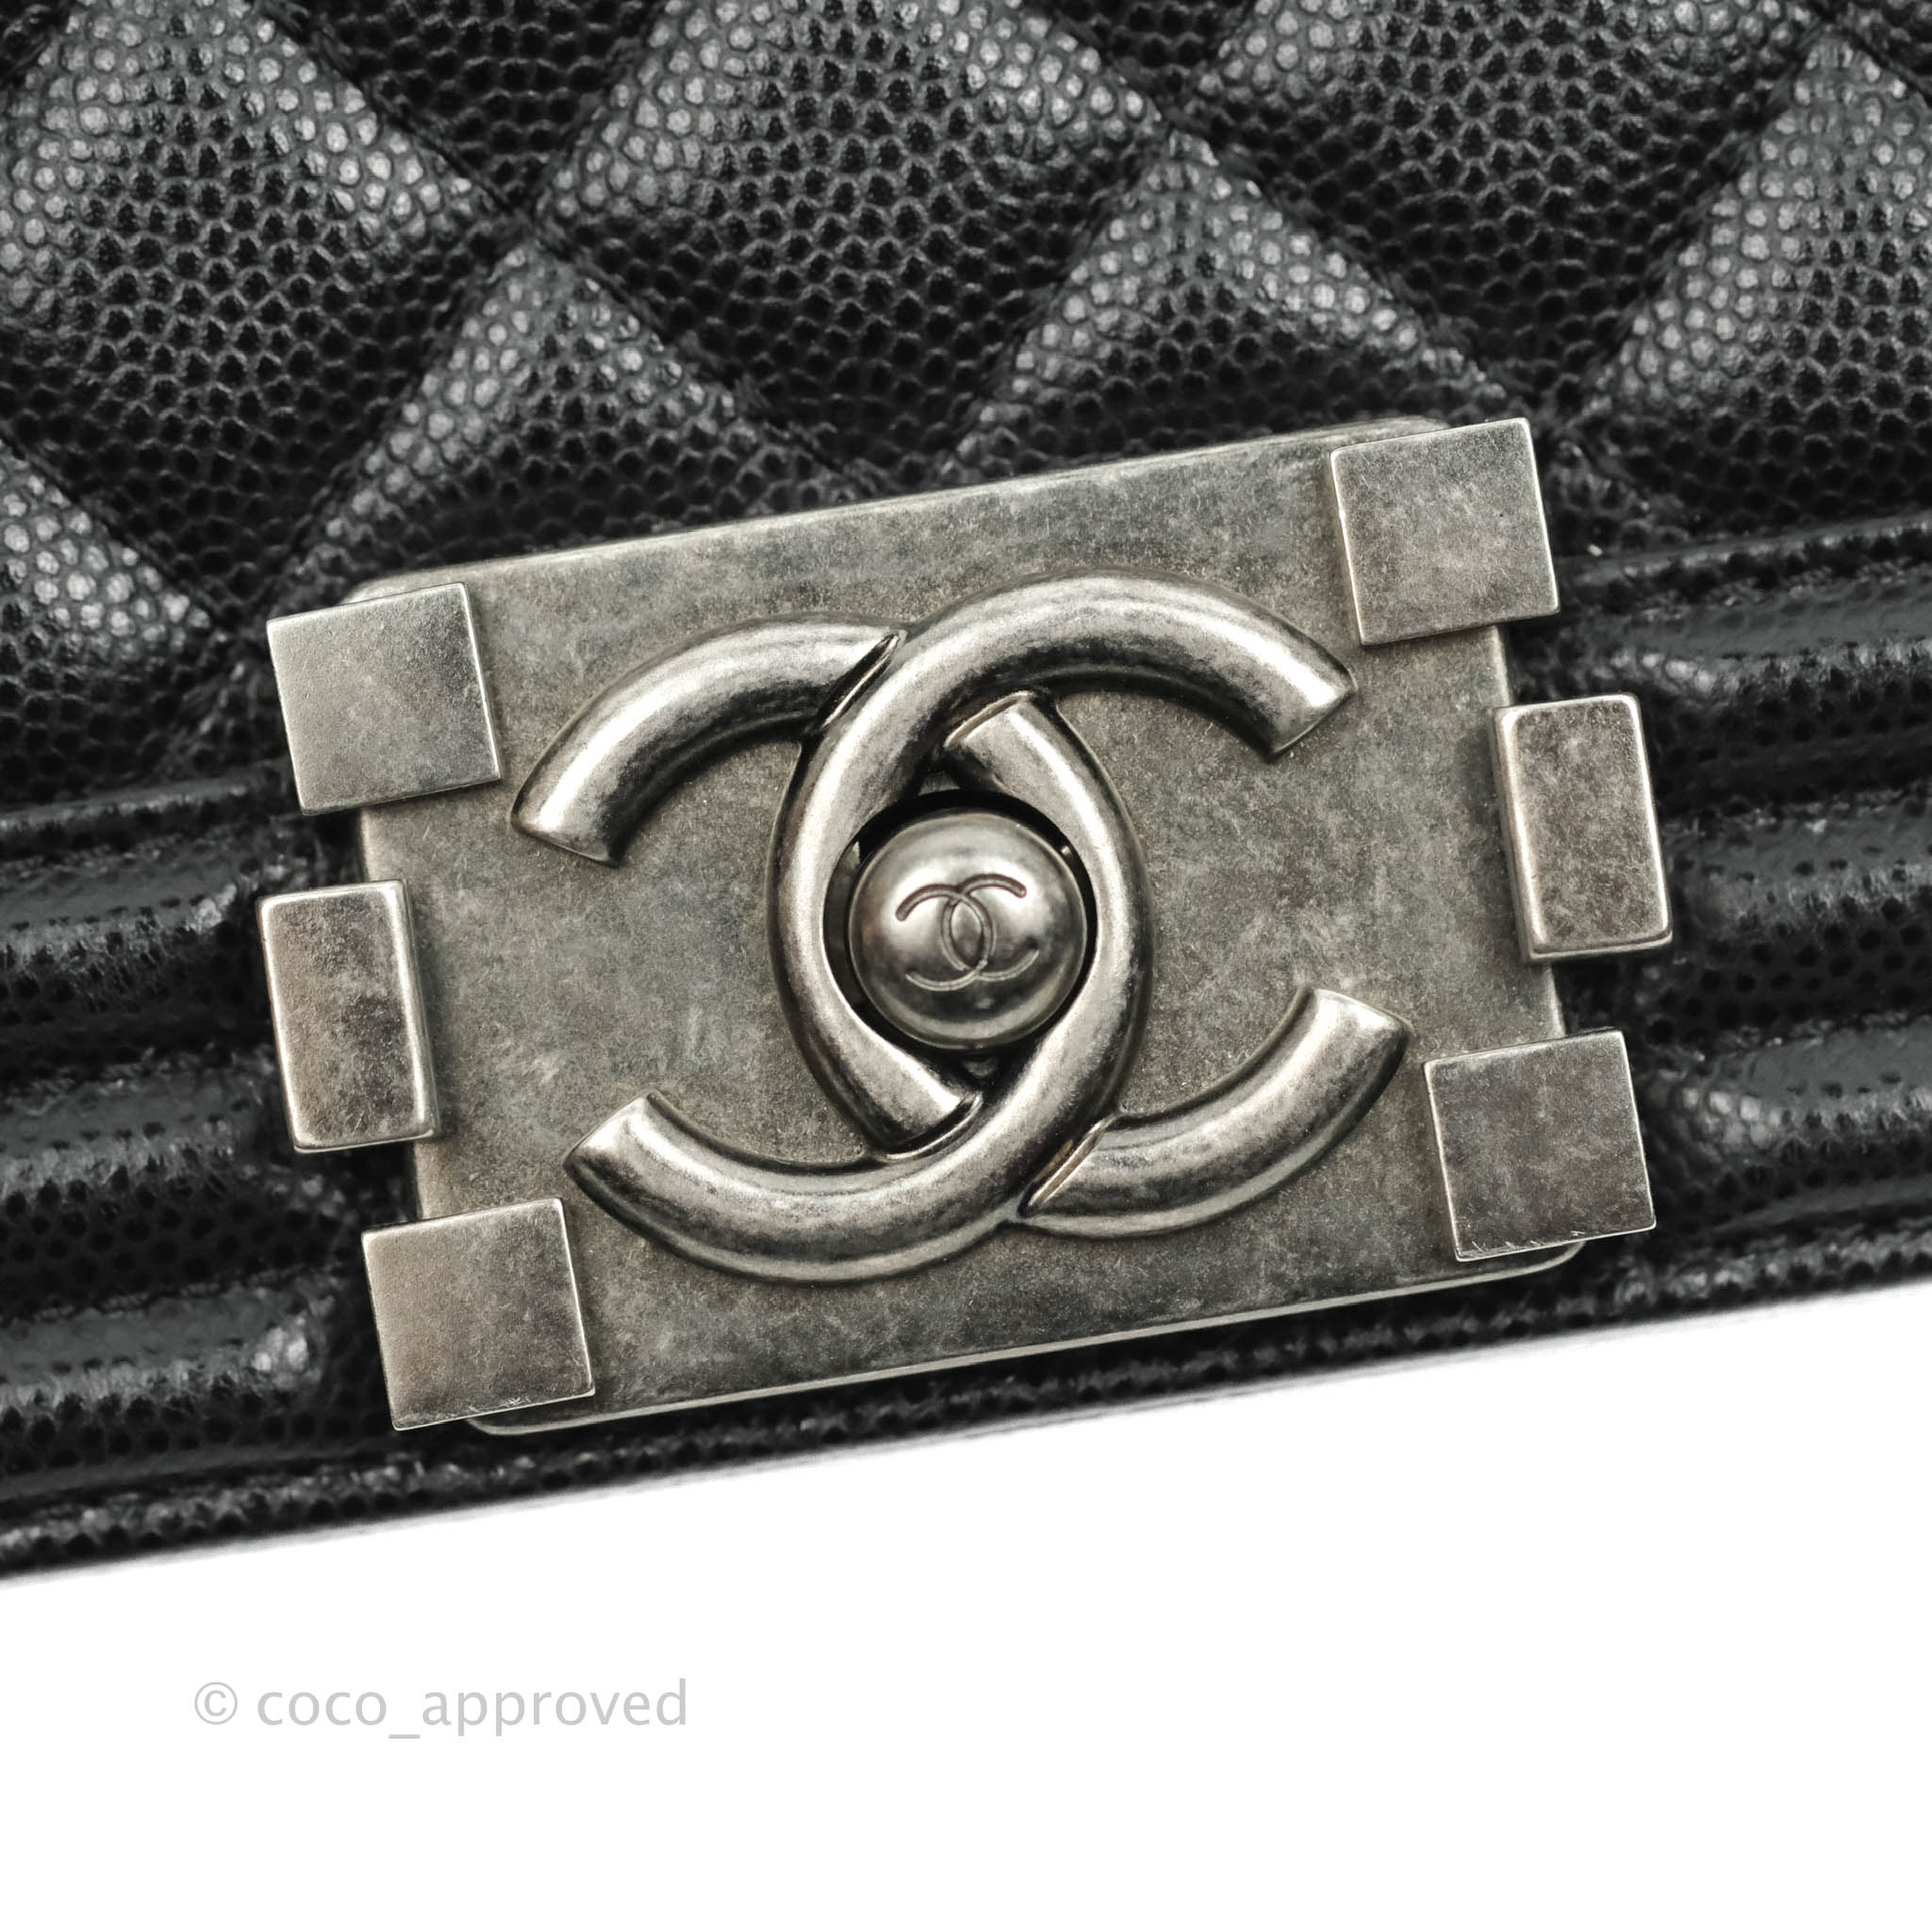 Pin on Fashion: Handbags and Wallets